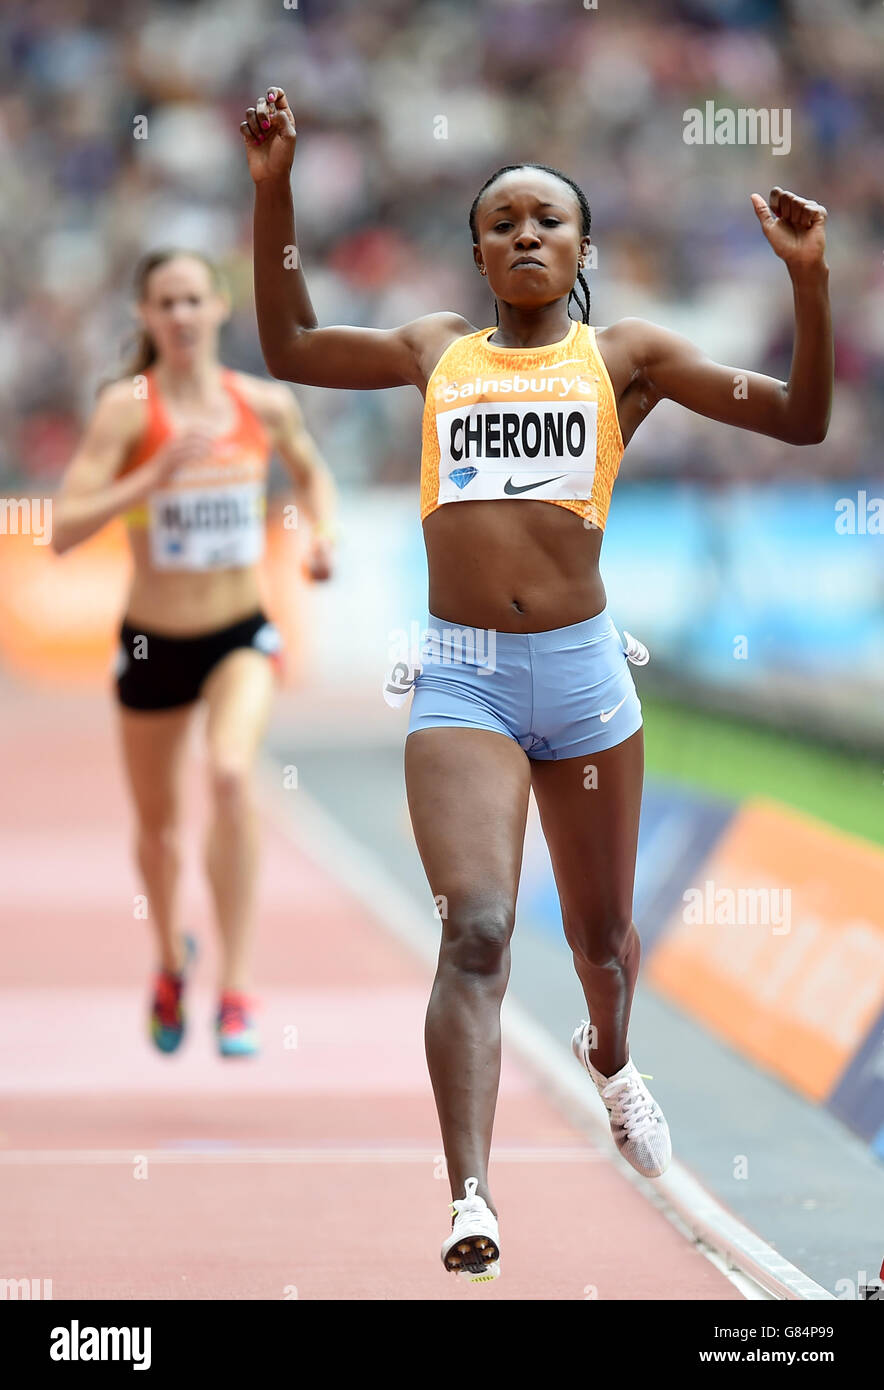 Le Kenya Mercy Cherono Koech célèbre la victoire de la course féminine de 5000 mètres au cours du deuxième jour des Jeux d'anniversaire de Sainsbury au stade du parc olympique Queen Elizabeth, à Londres. Banque D'Images